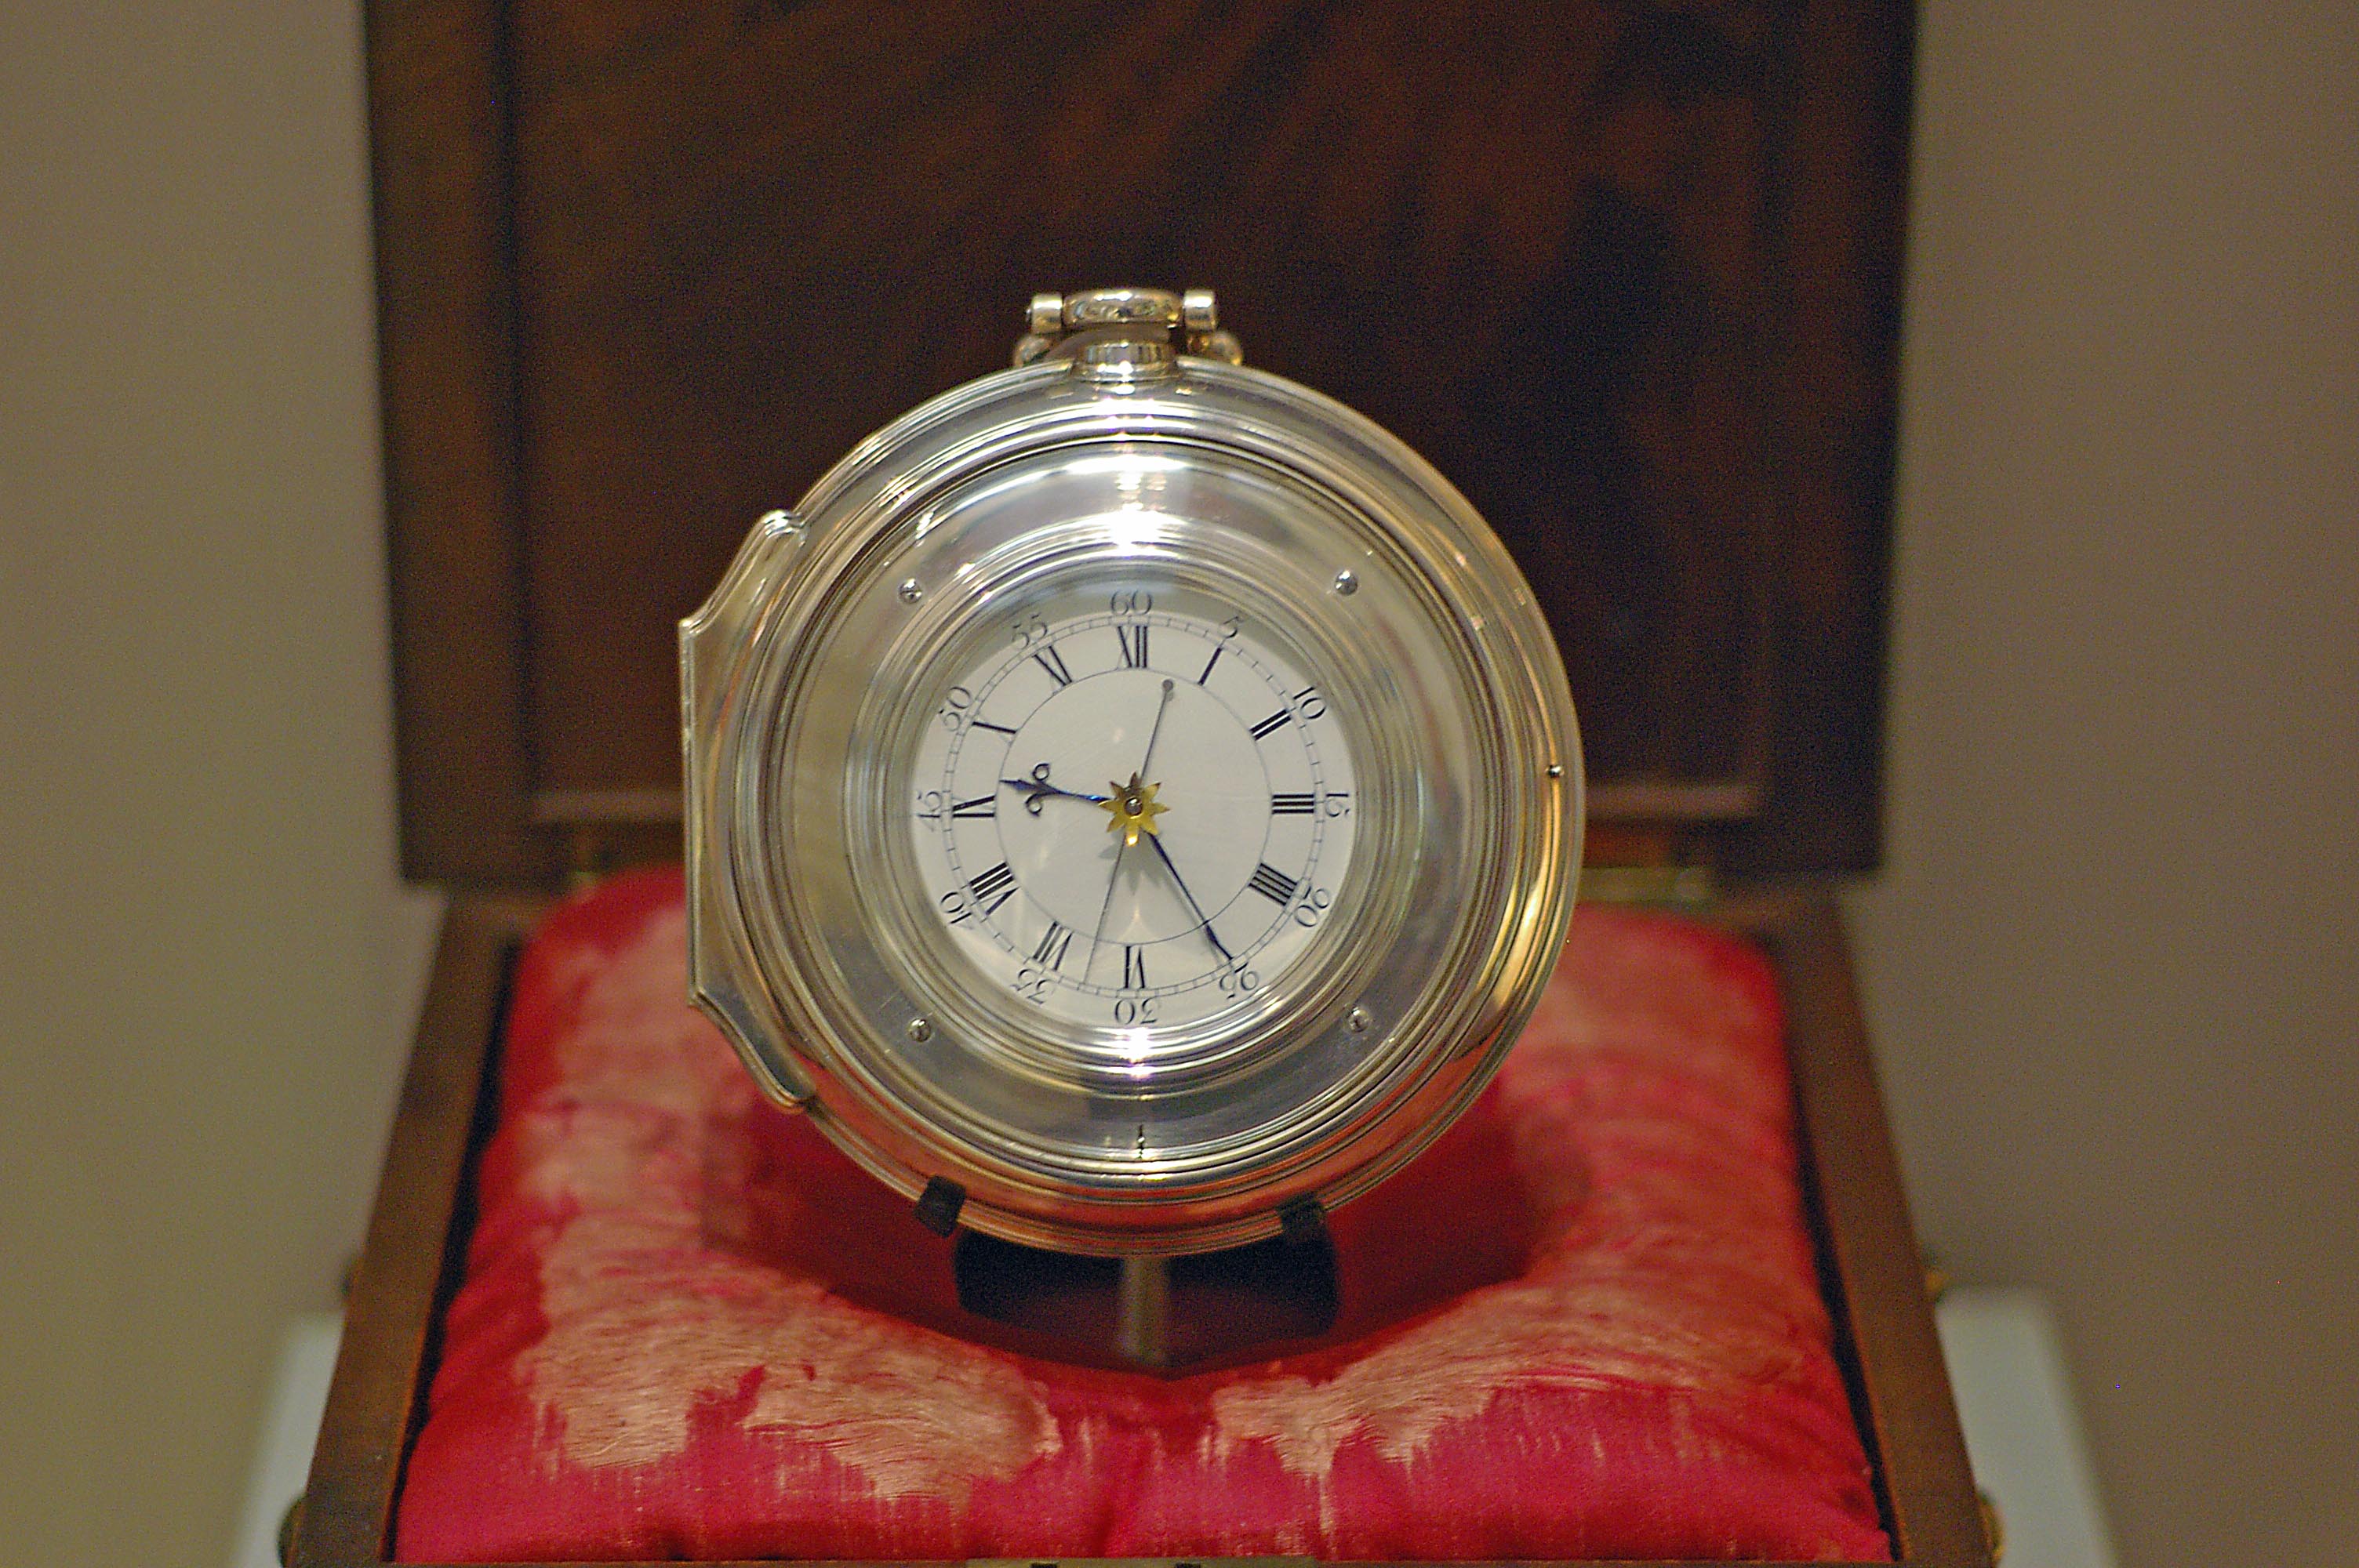 Le chronomètre rend possible la mesure du temps. © Racklever, CC BY-SA 3.0, Wikimedia Commons